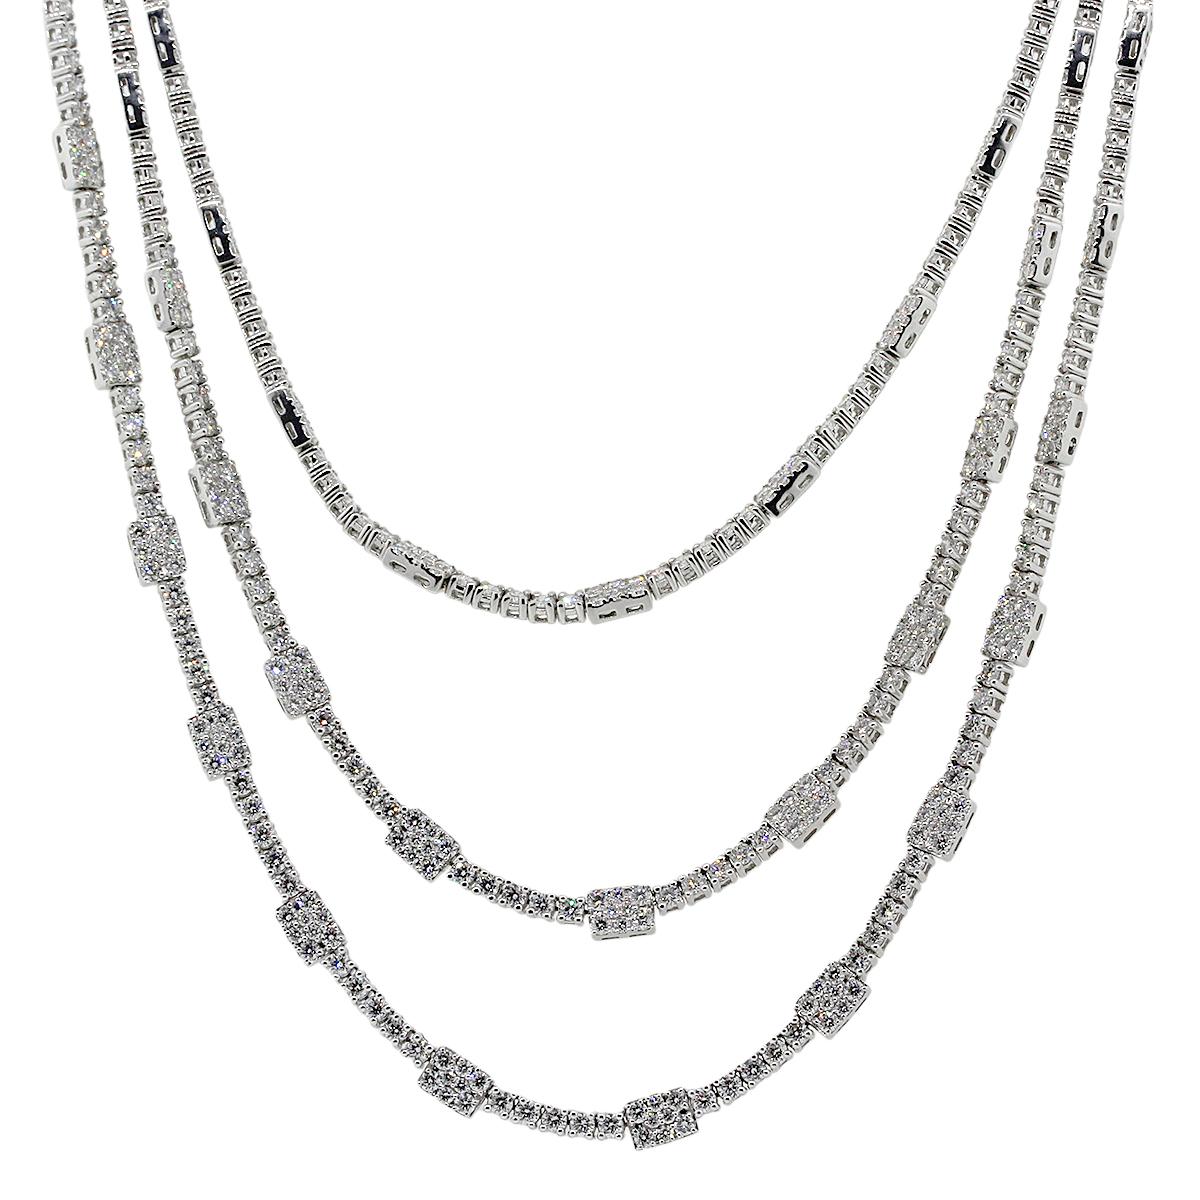 45.29 Carat Diamond Necklace